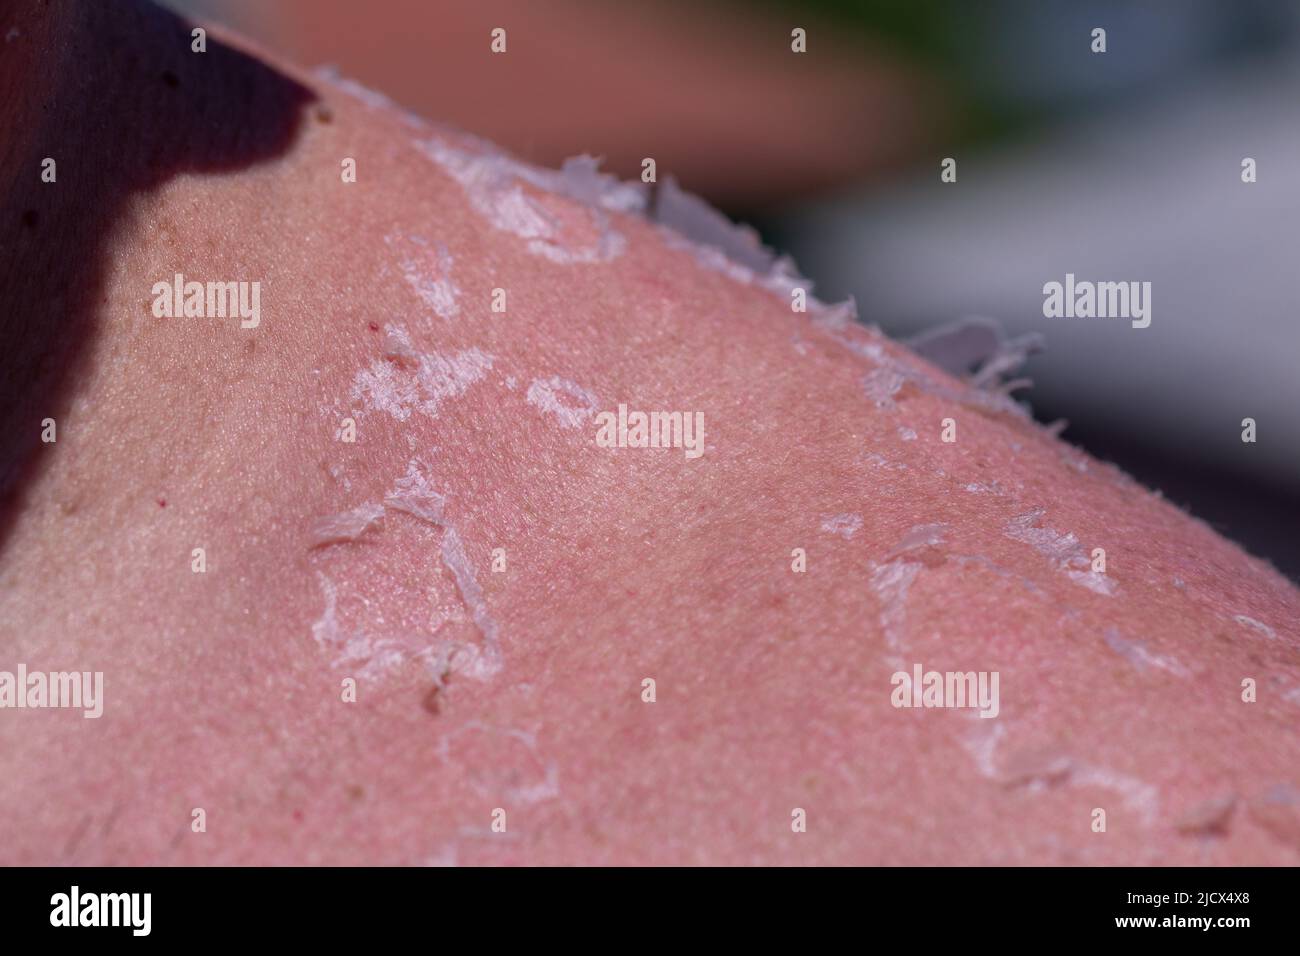 Sunburn. Closeup of Peeling sunburned skin on back and shoulder stock photo Stock Photo